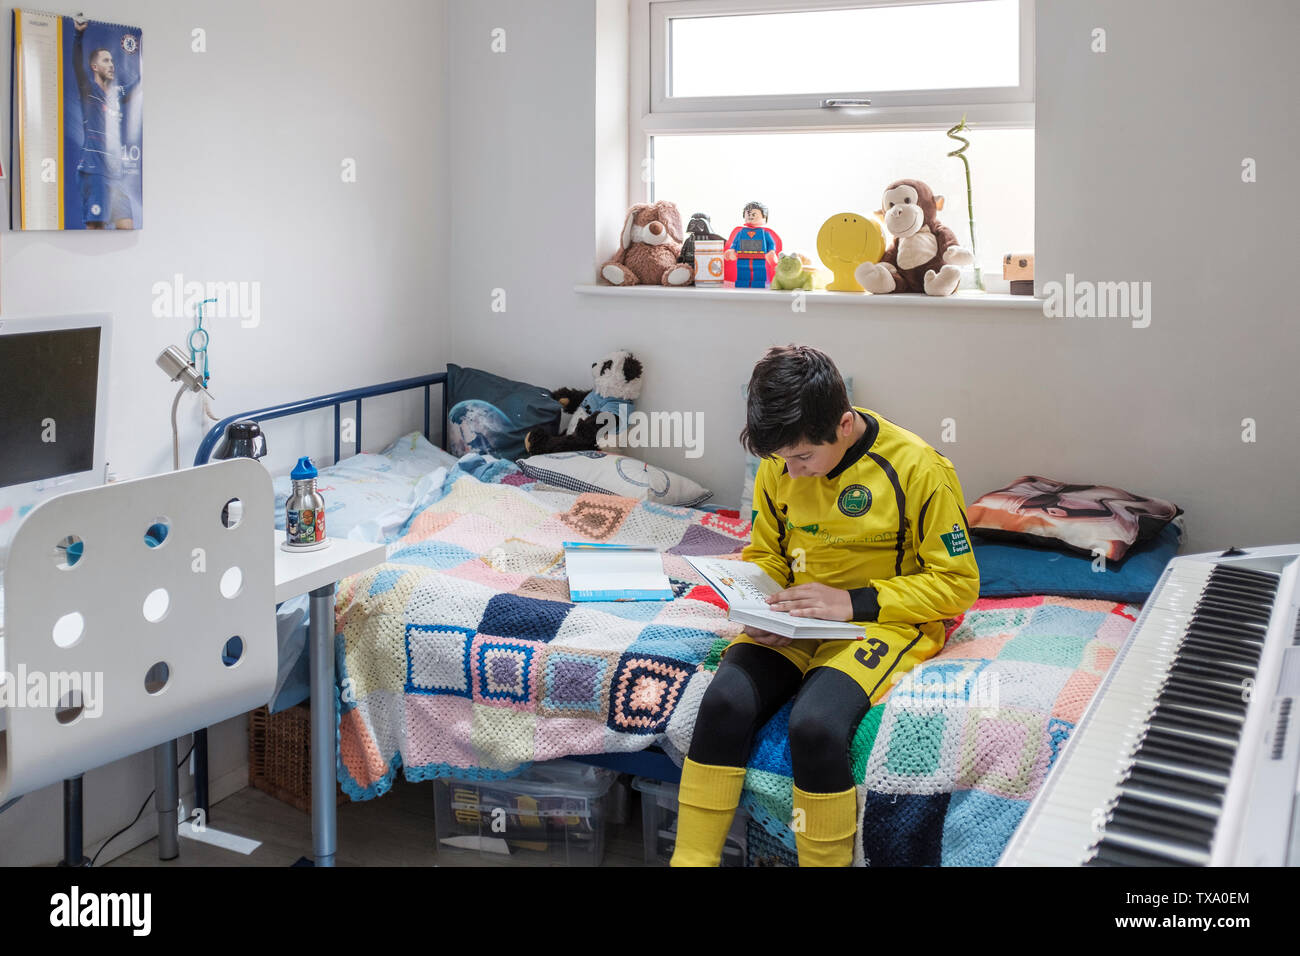 England, Uk-Young Junge, 11 Jahre in der kleinen Liga Fußball-Outfit liest ein Buch in seinem Schlafzimmer Stockfoto